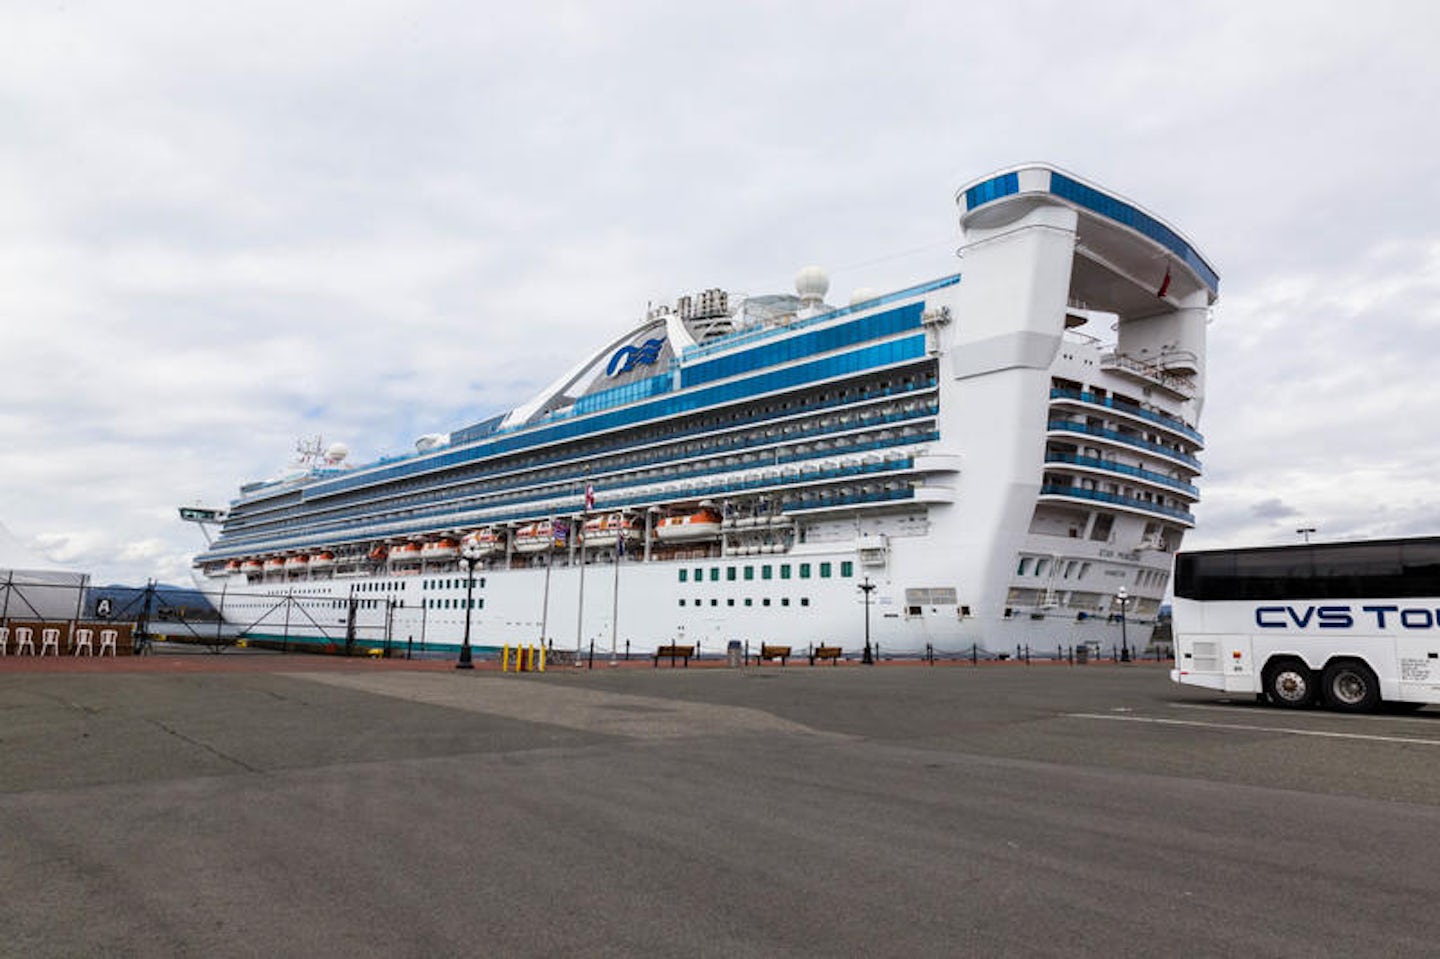 Ship Exterior on Star Princess Cruise Ship Cruise Critic